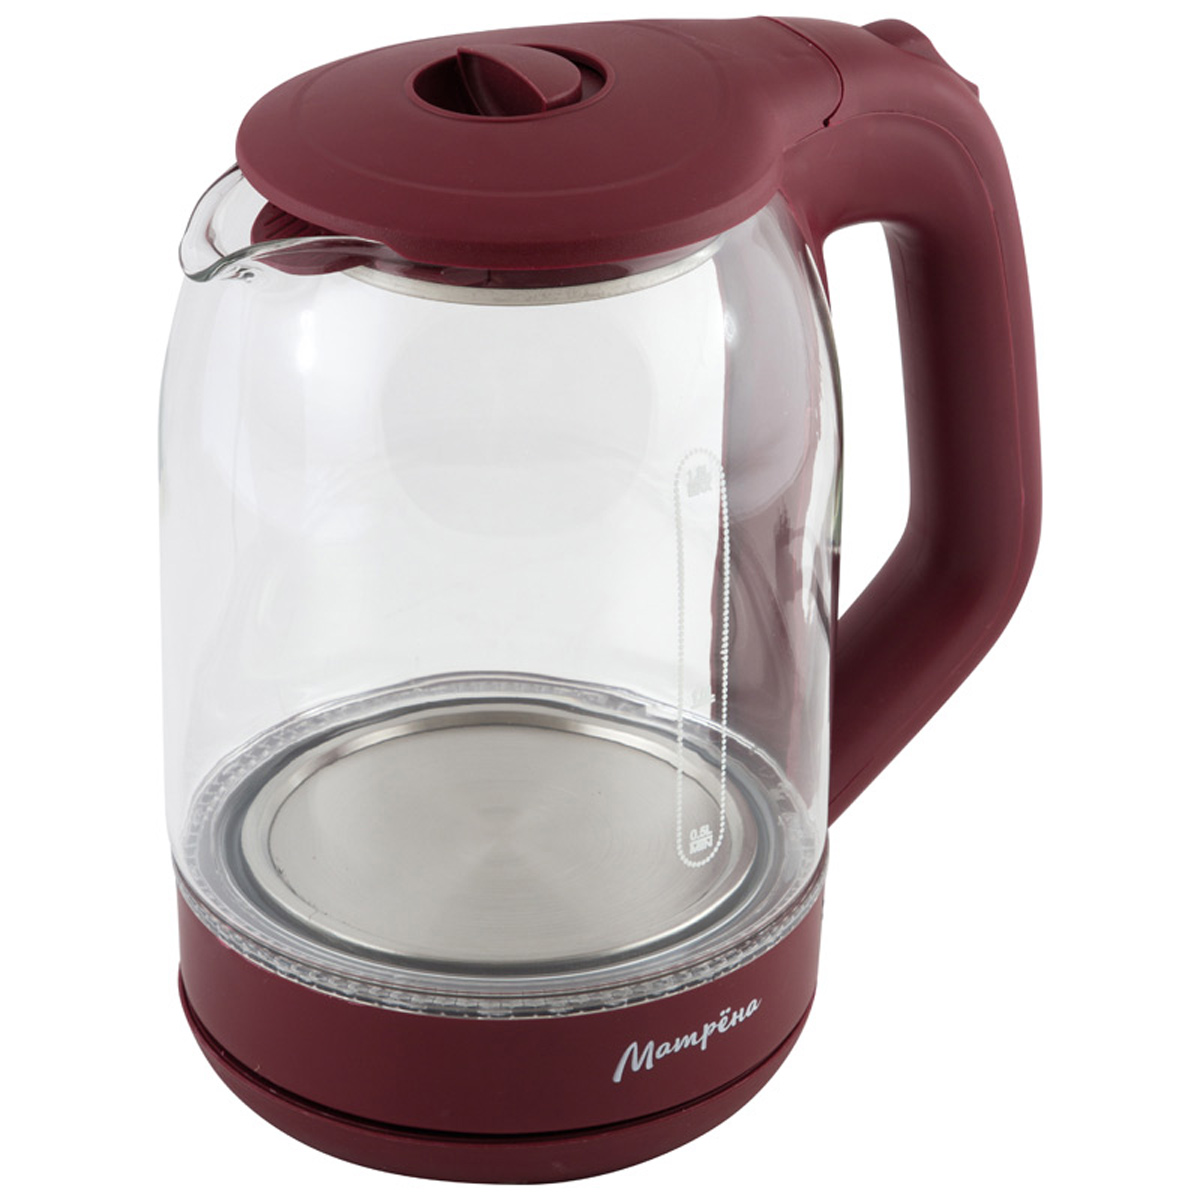 Чайник МАТРЕНА MA-006 электрический (1,8 л) стекло вишневый (005415)Купить